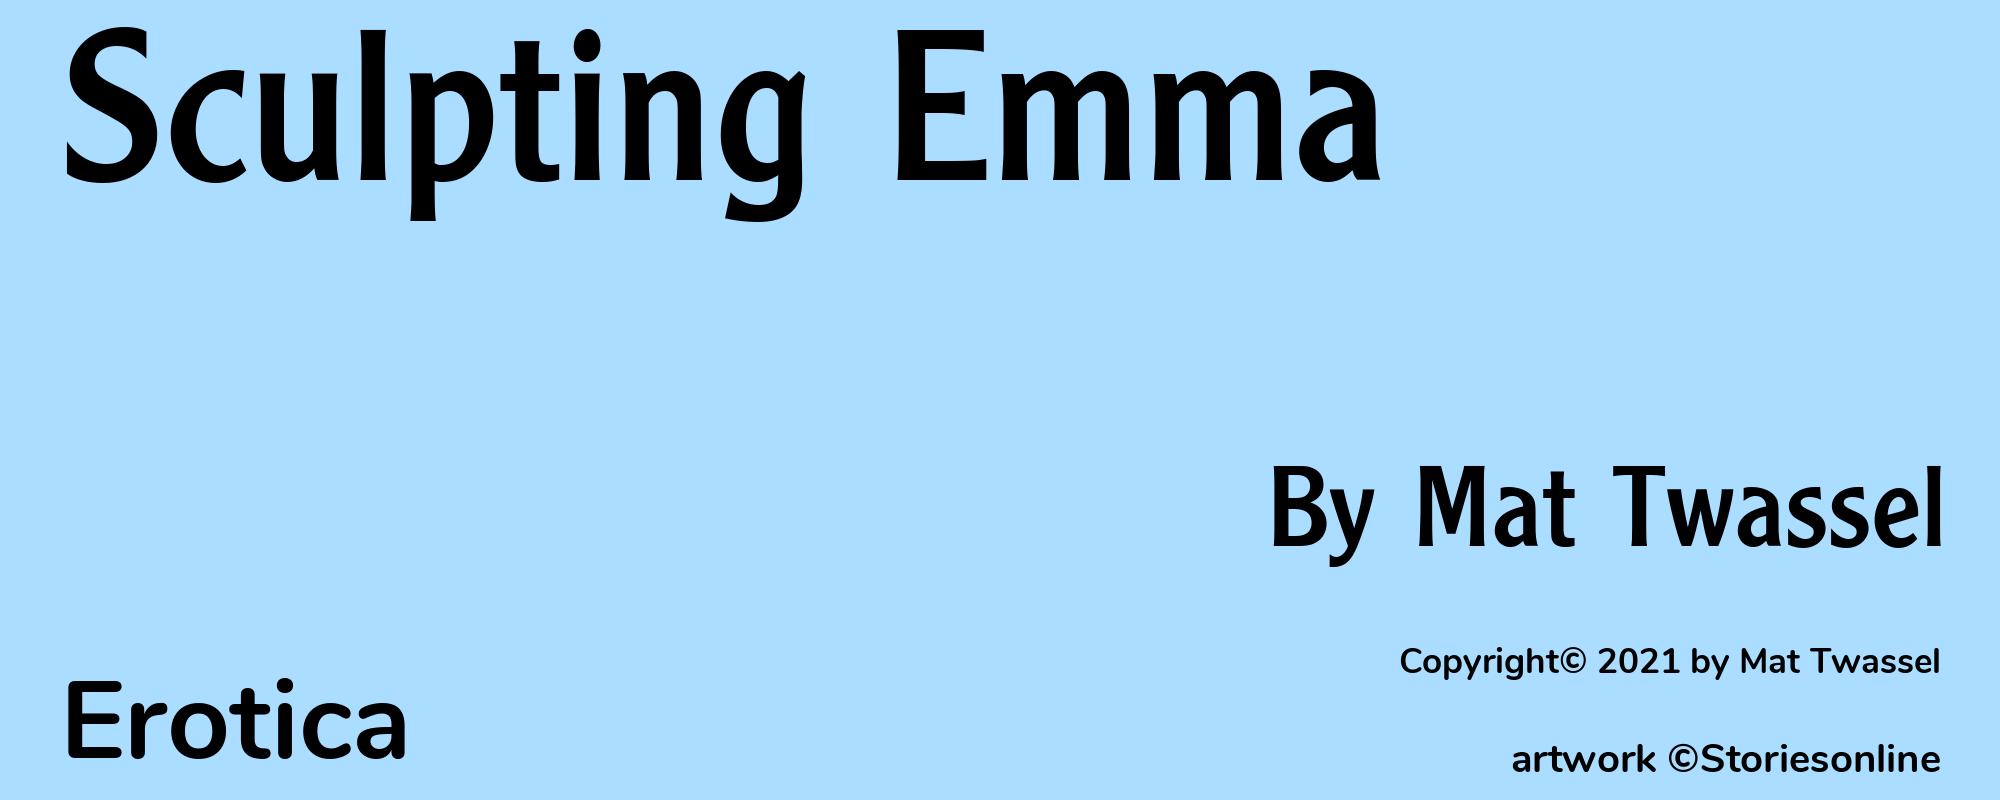 Sculpting Emma - Cover